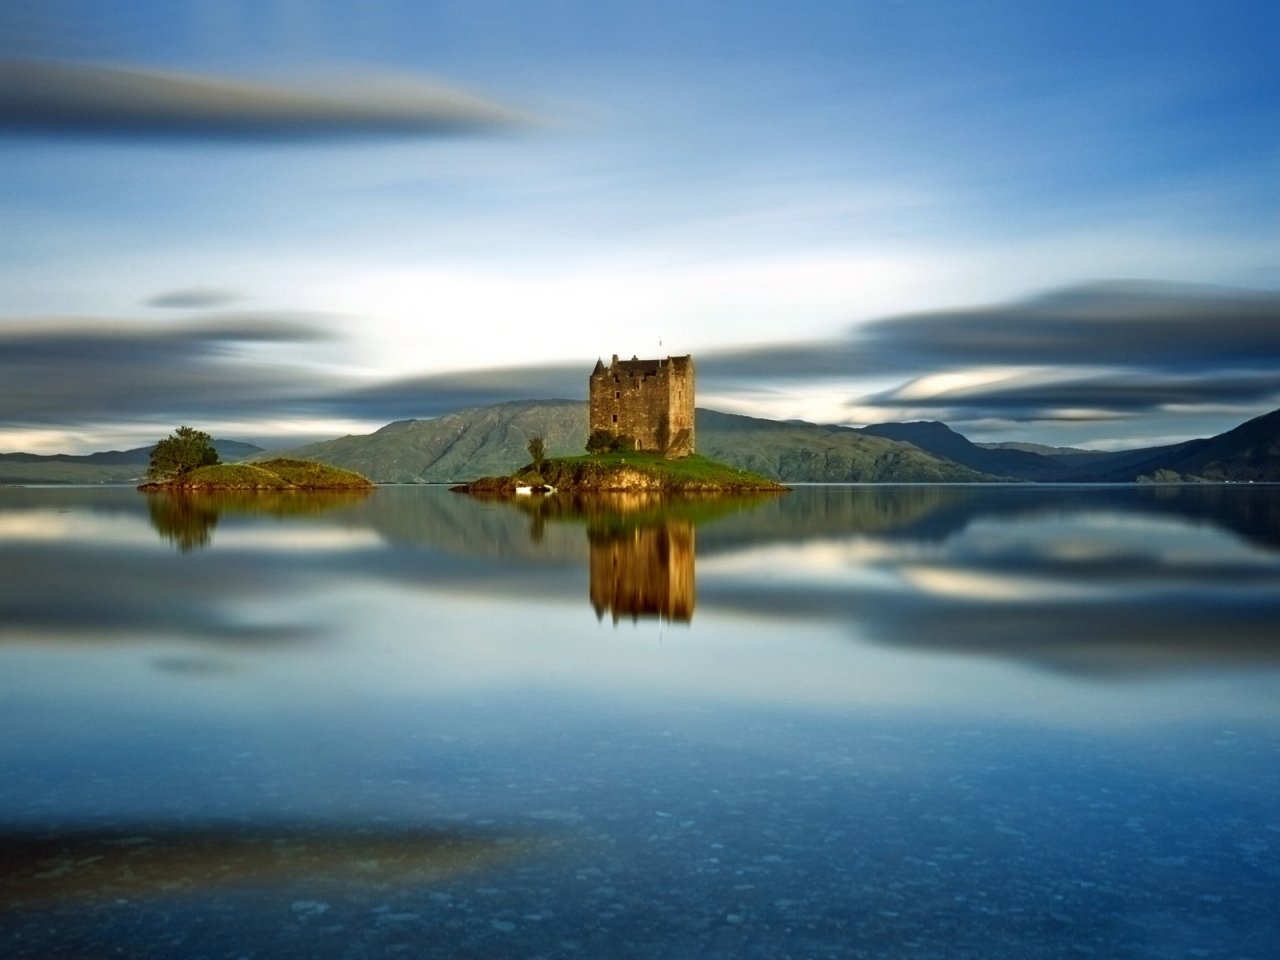 Castle Stalker Scotland for 1280 x 960 resolution